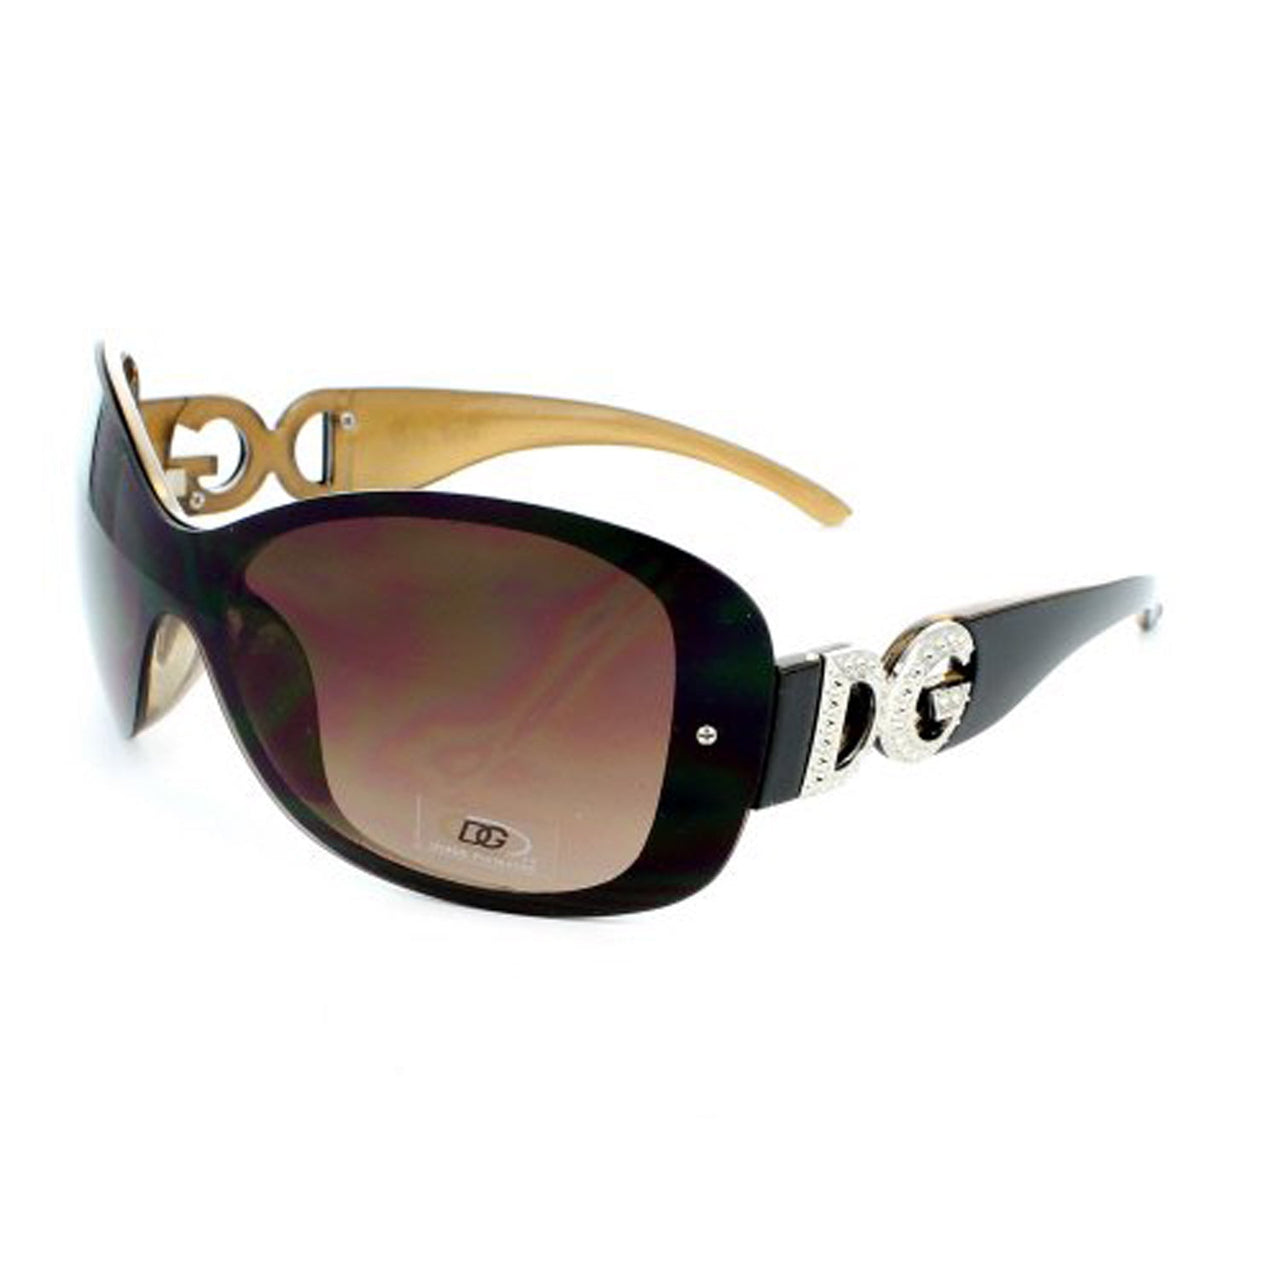 DG Sunglasses Oversized DG26799 - Black-Brown